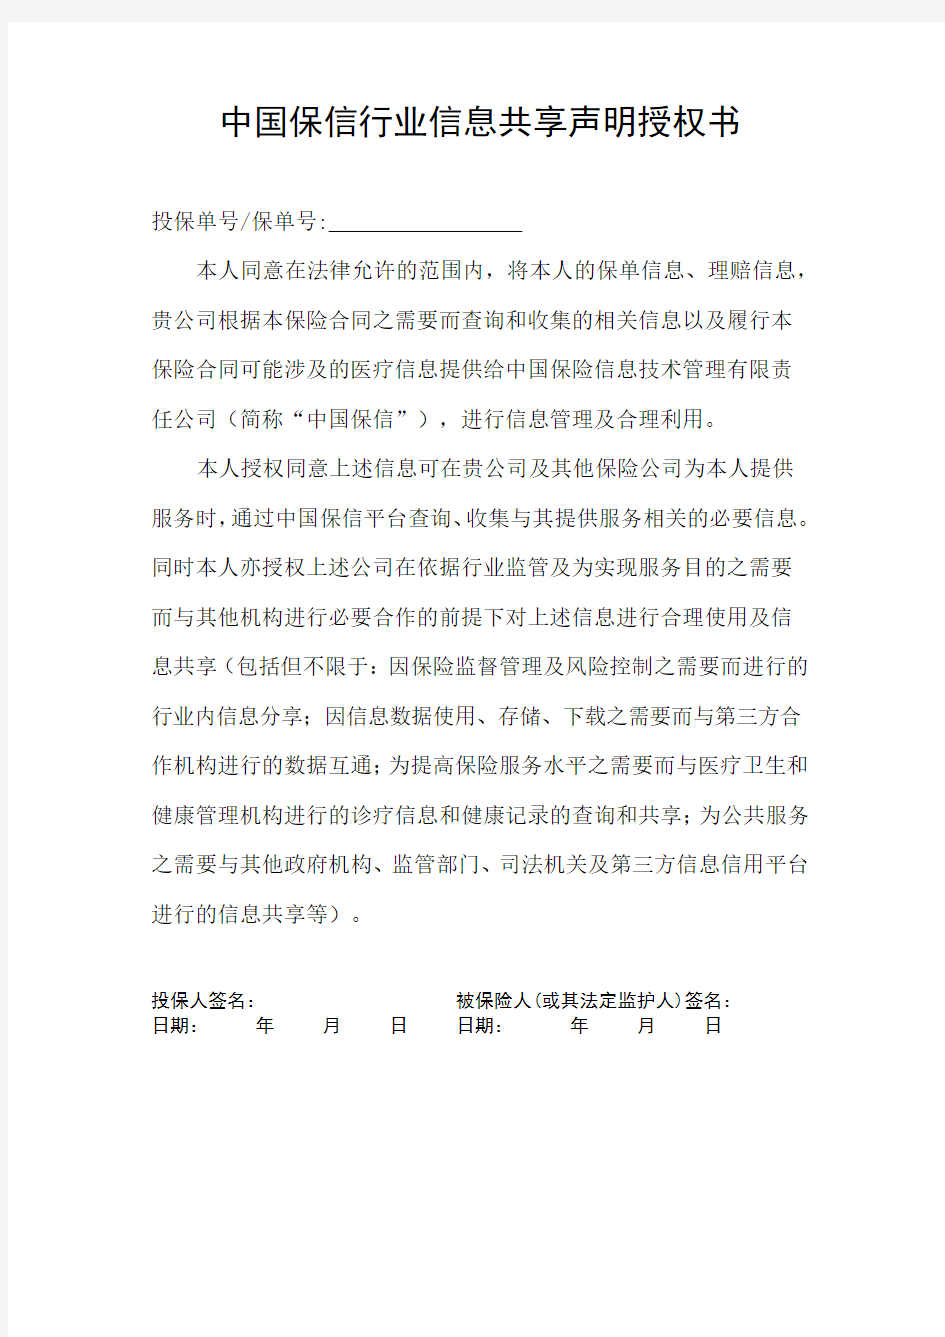 中国保信行业信息共享授权书